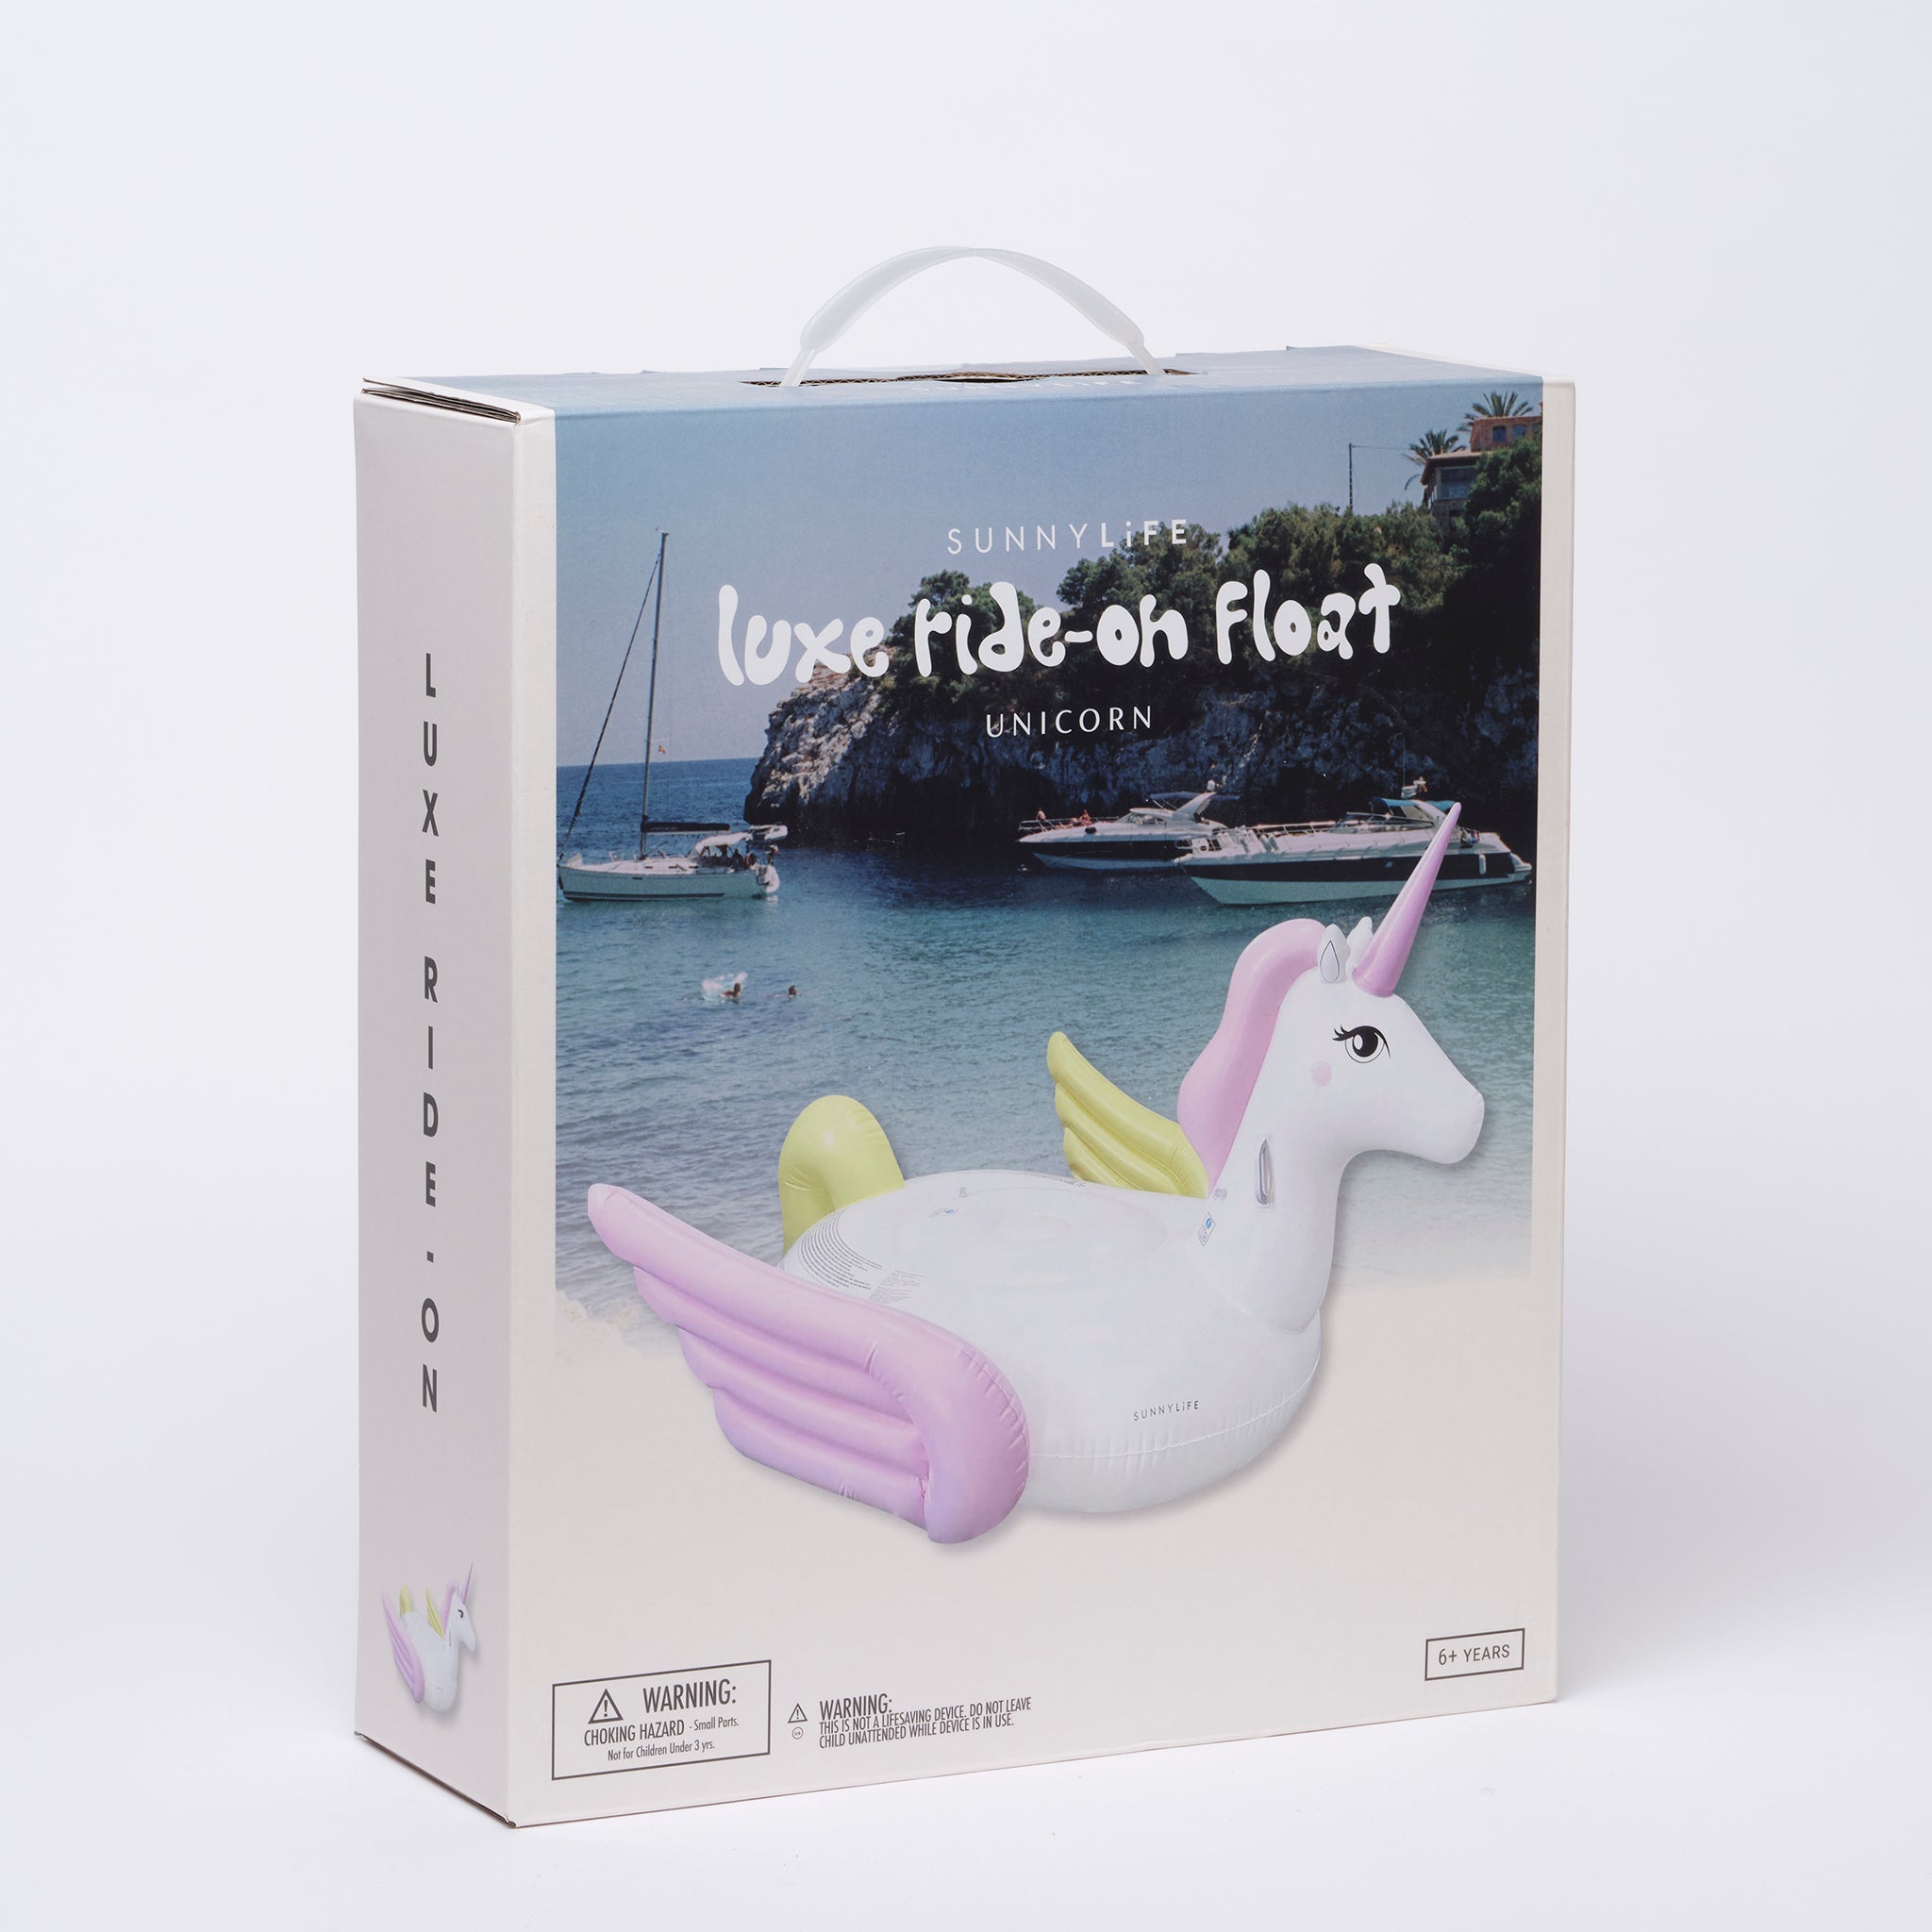 SUNNYLiFE | Luxe Ride-On Float | Unicorn